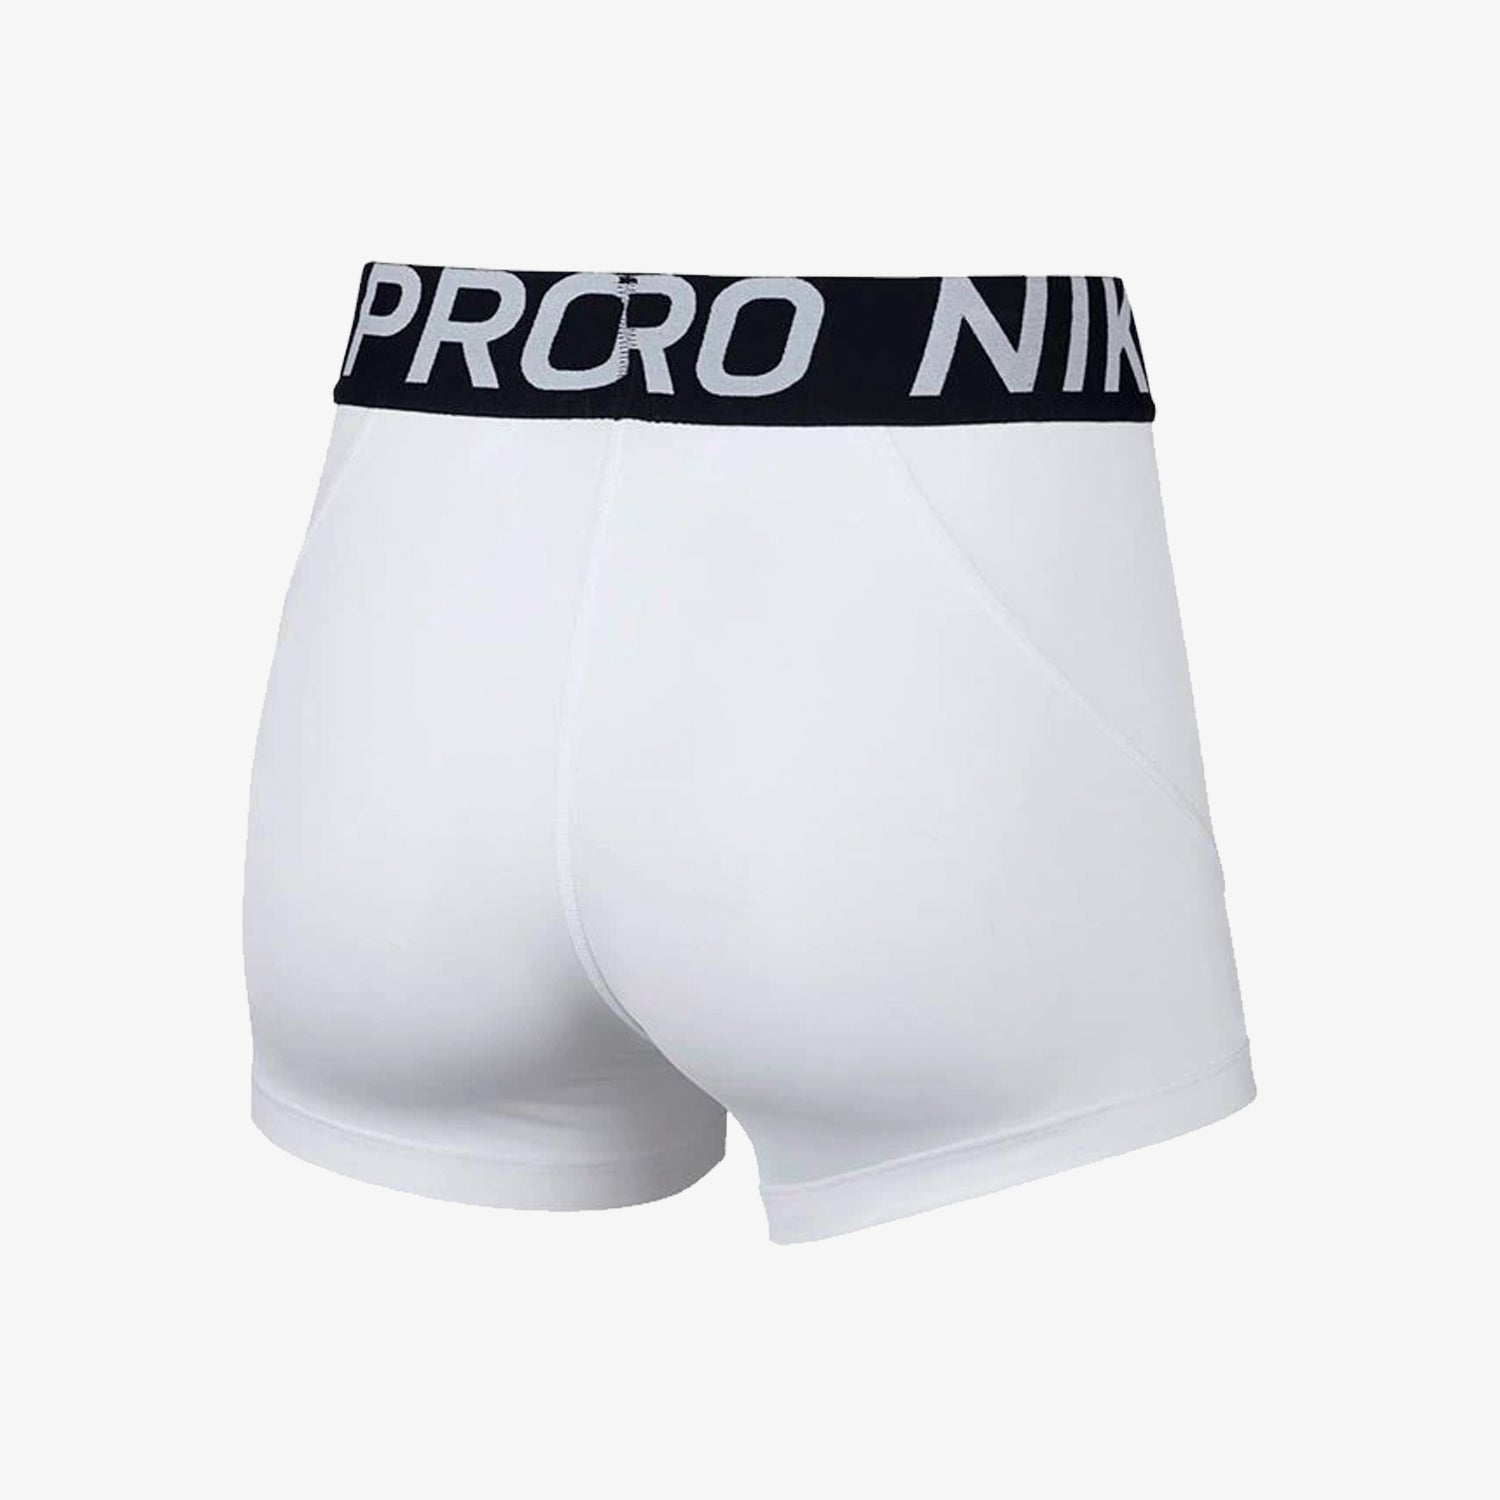 nike go pro shorts